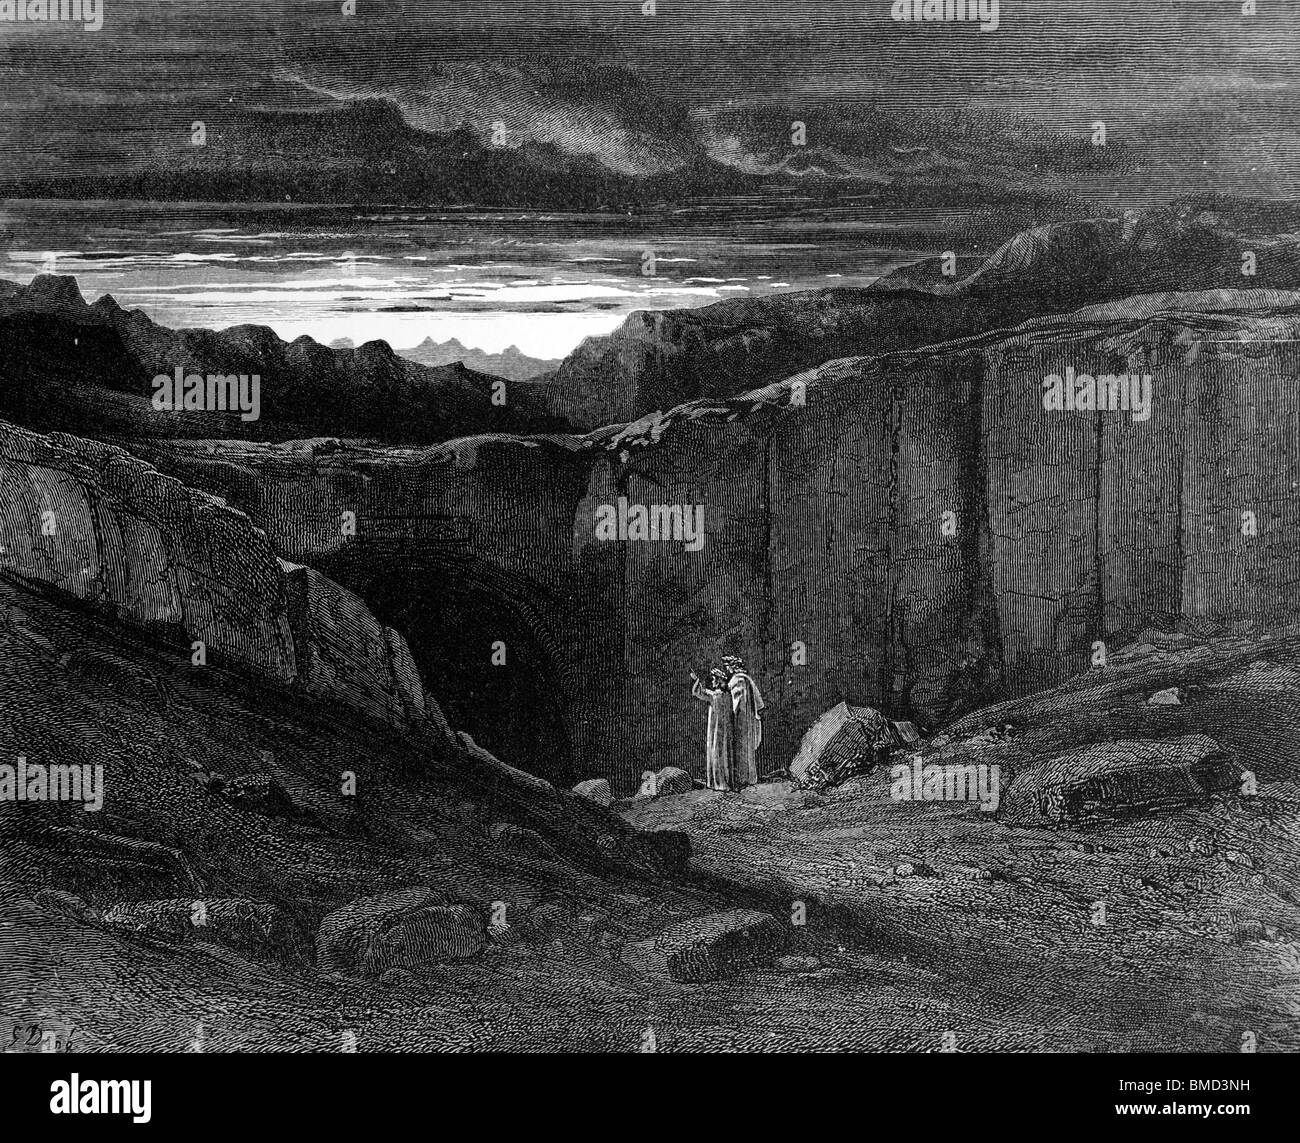 Grabado de Gustave Doré de la Divina Comedia de Dante Alighieri 'infierno' o 'visiones del Infierno"; Dante y Virgilio entrar en el infierno Foto de stock